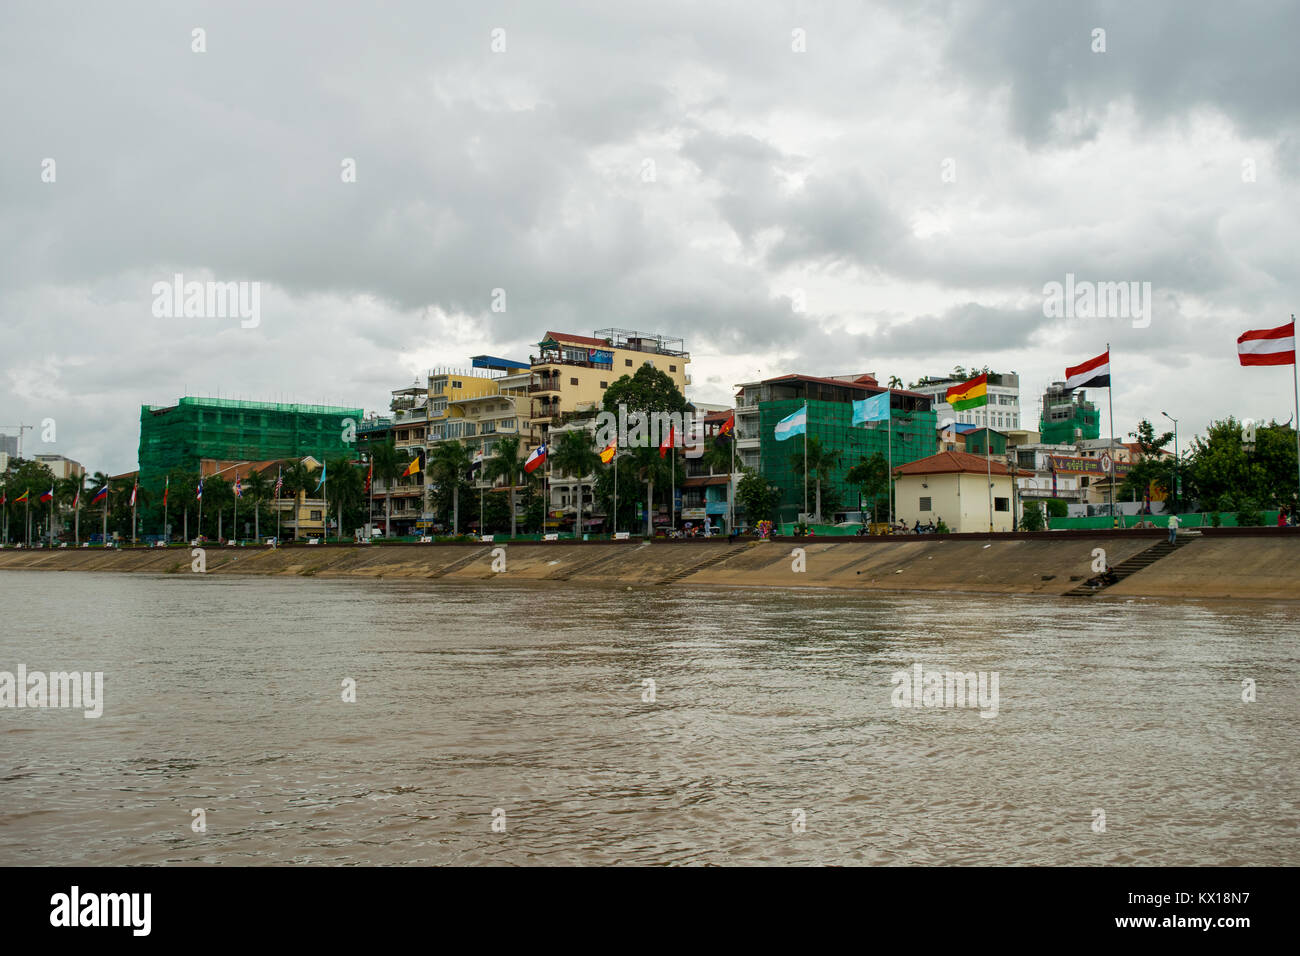 La mondialisation par exemple. Un ensemble de drapeaux de différents pays battant sur Sisowath Quay fleuve Tonle Sap Phnom Penh Cambodge Asie Banque D'Images